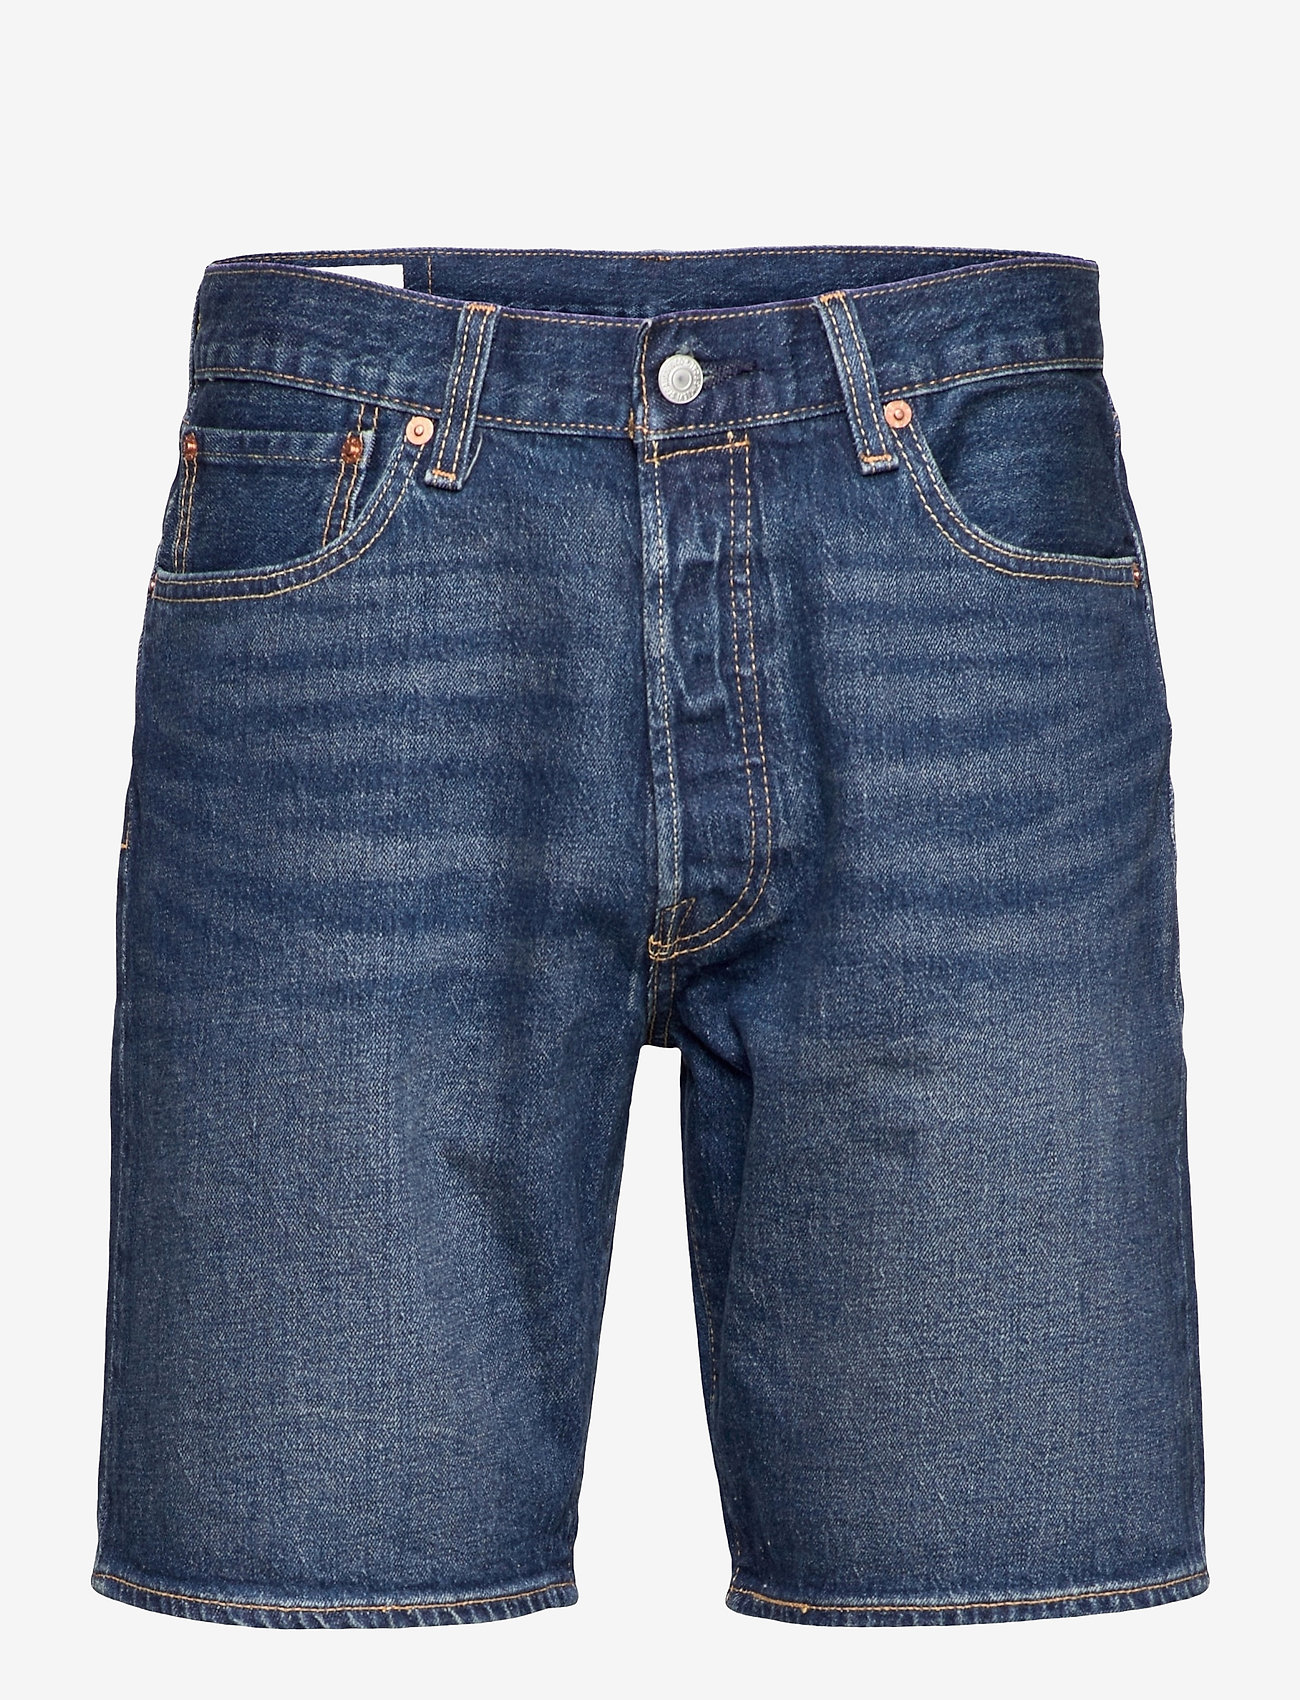 LEVI´S Men - 501 HEMMED SHORT FIRE GOIN SHO - jeansshorts - med indigo - flat finish - 0